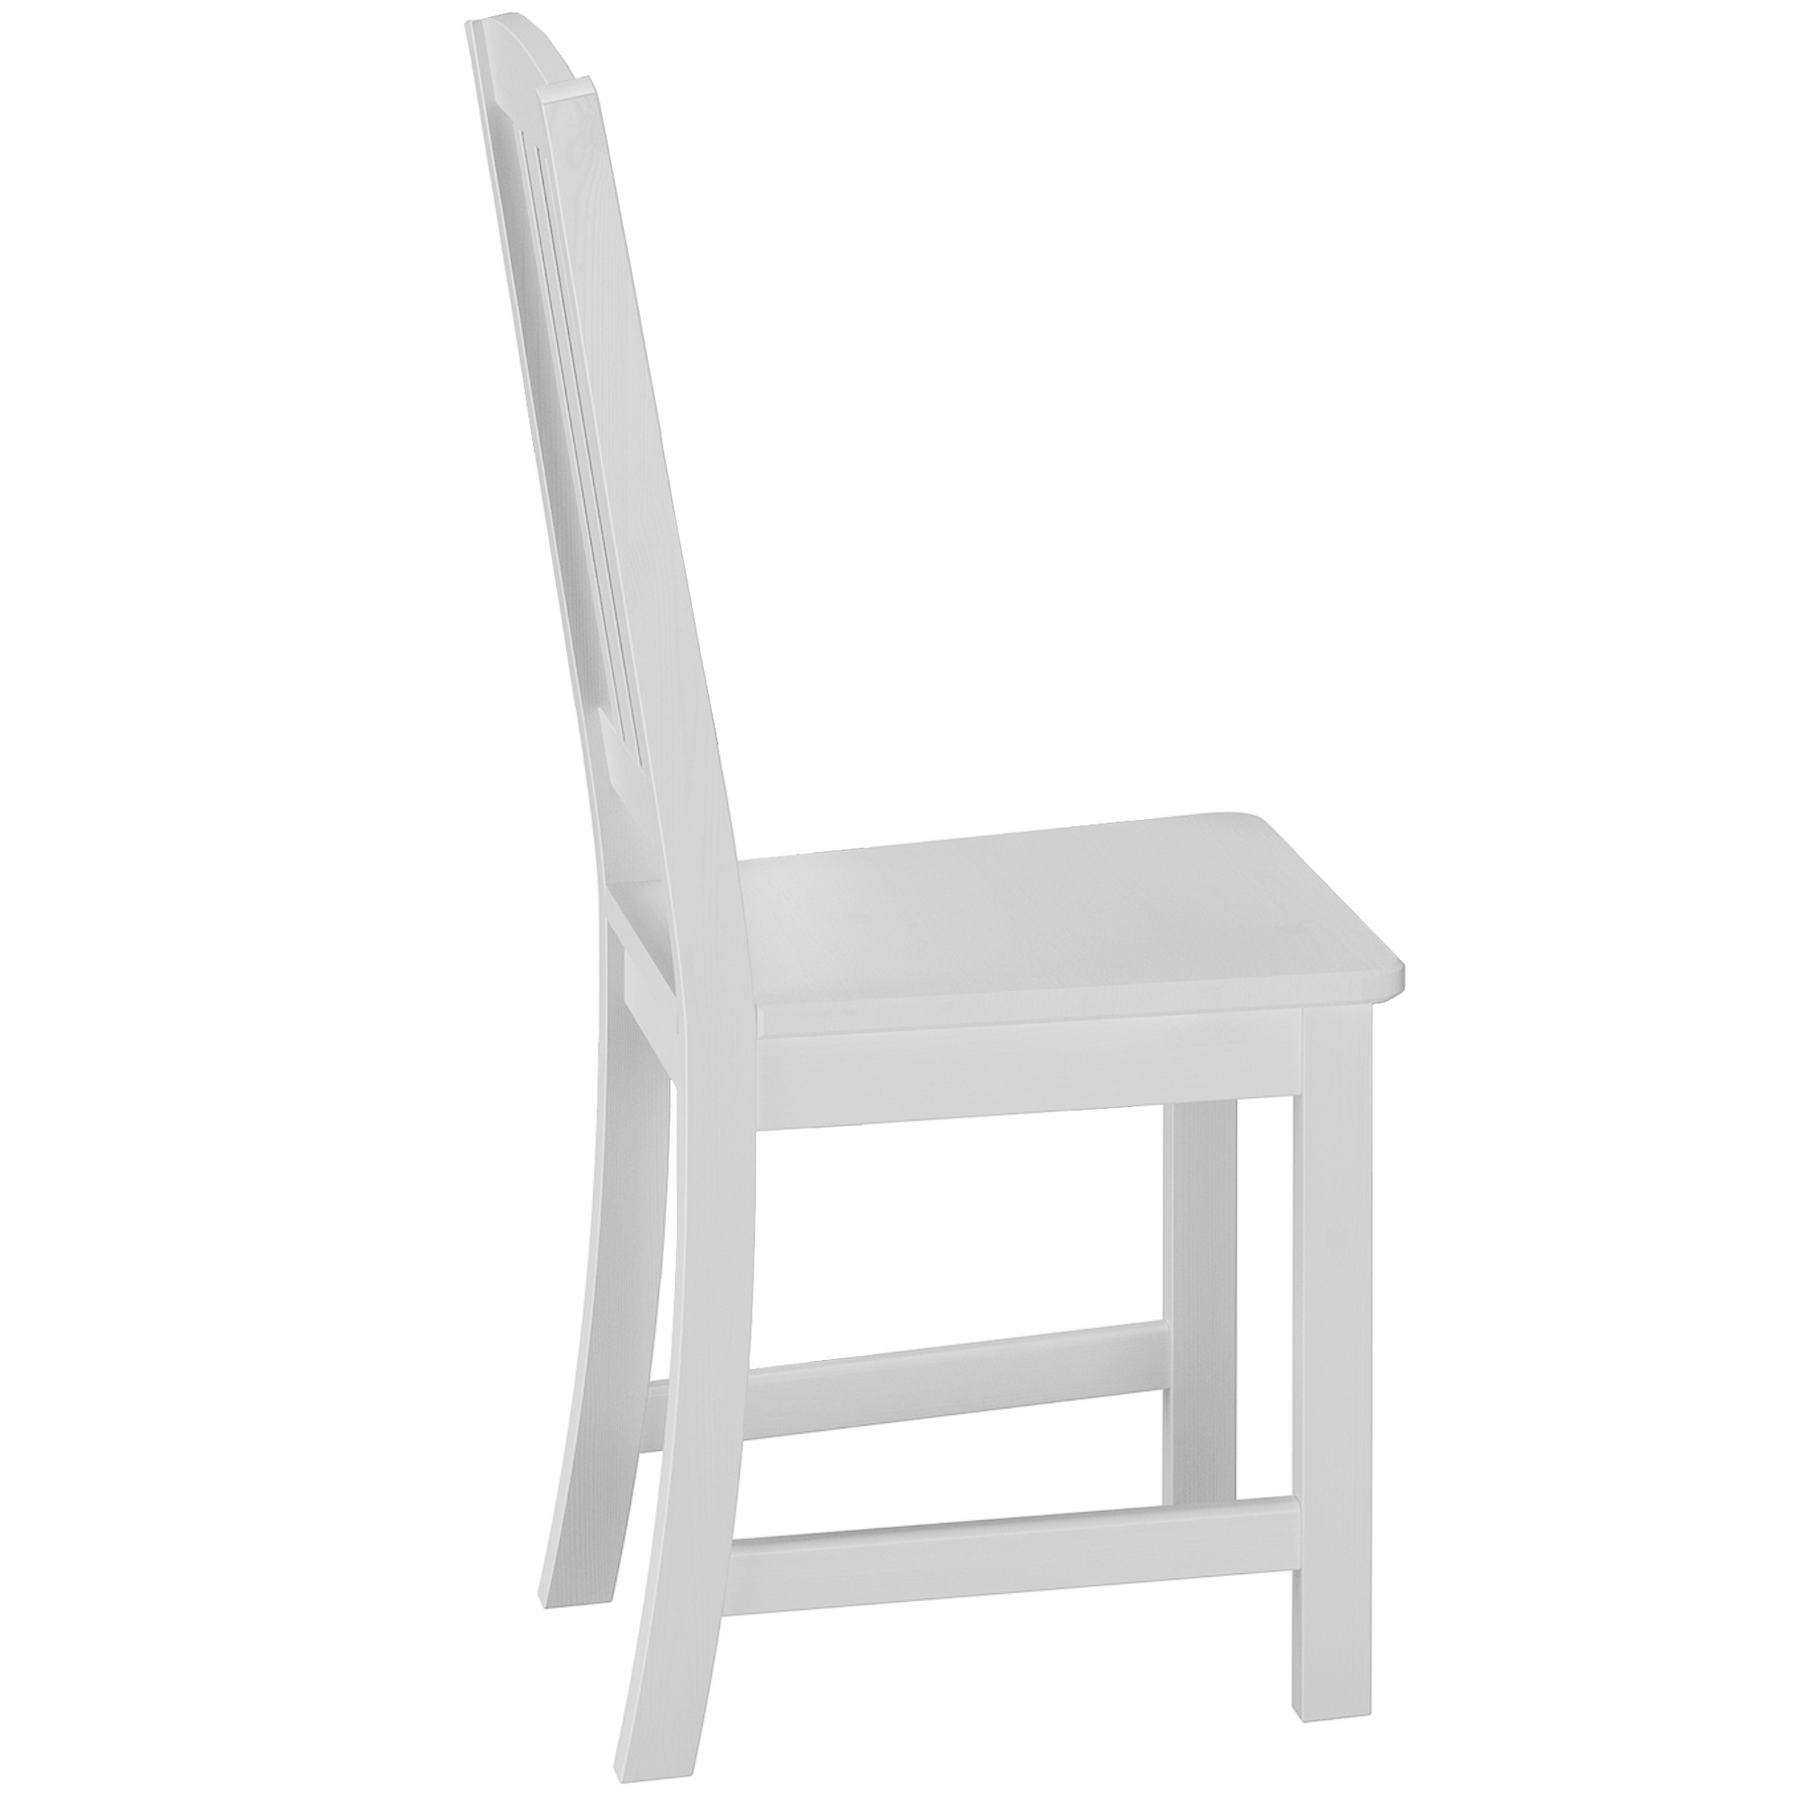  Stuhl aus Massivholz, Kiefer weiß lasiert, mit sanft geschwungener Rückenlehne und vertikalen Streben 